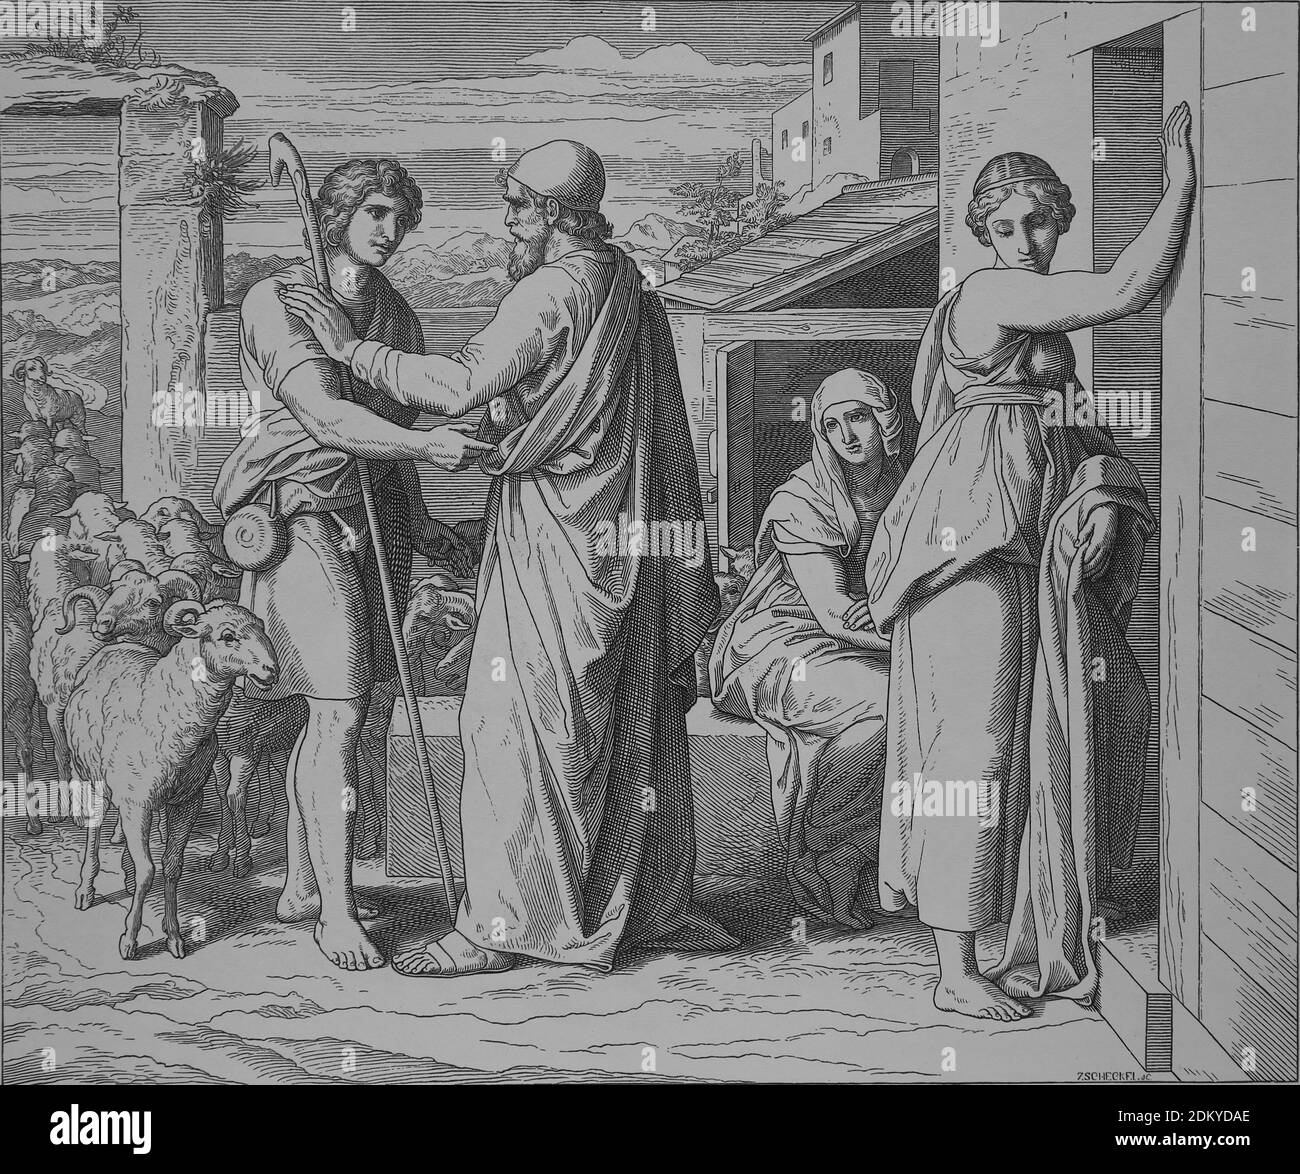 Jakob sucht Rachels Hand in der Ehe. Genesis, Kegel 29. Stich von Julius Schnorr von Carolsfeld (1794-1872). Stockfoto